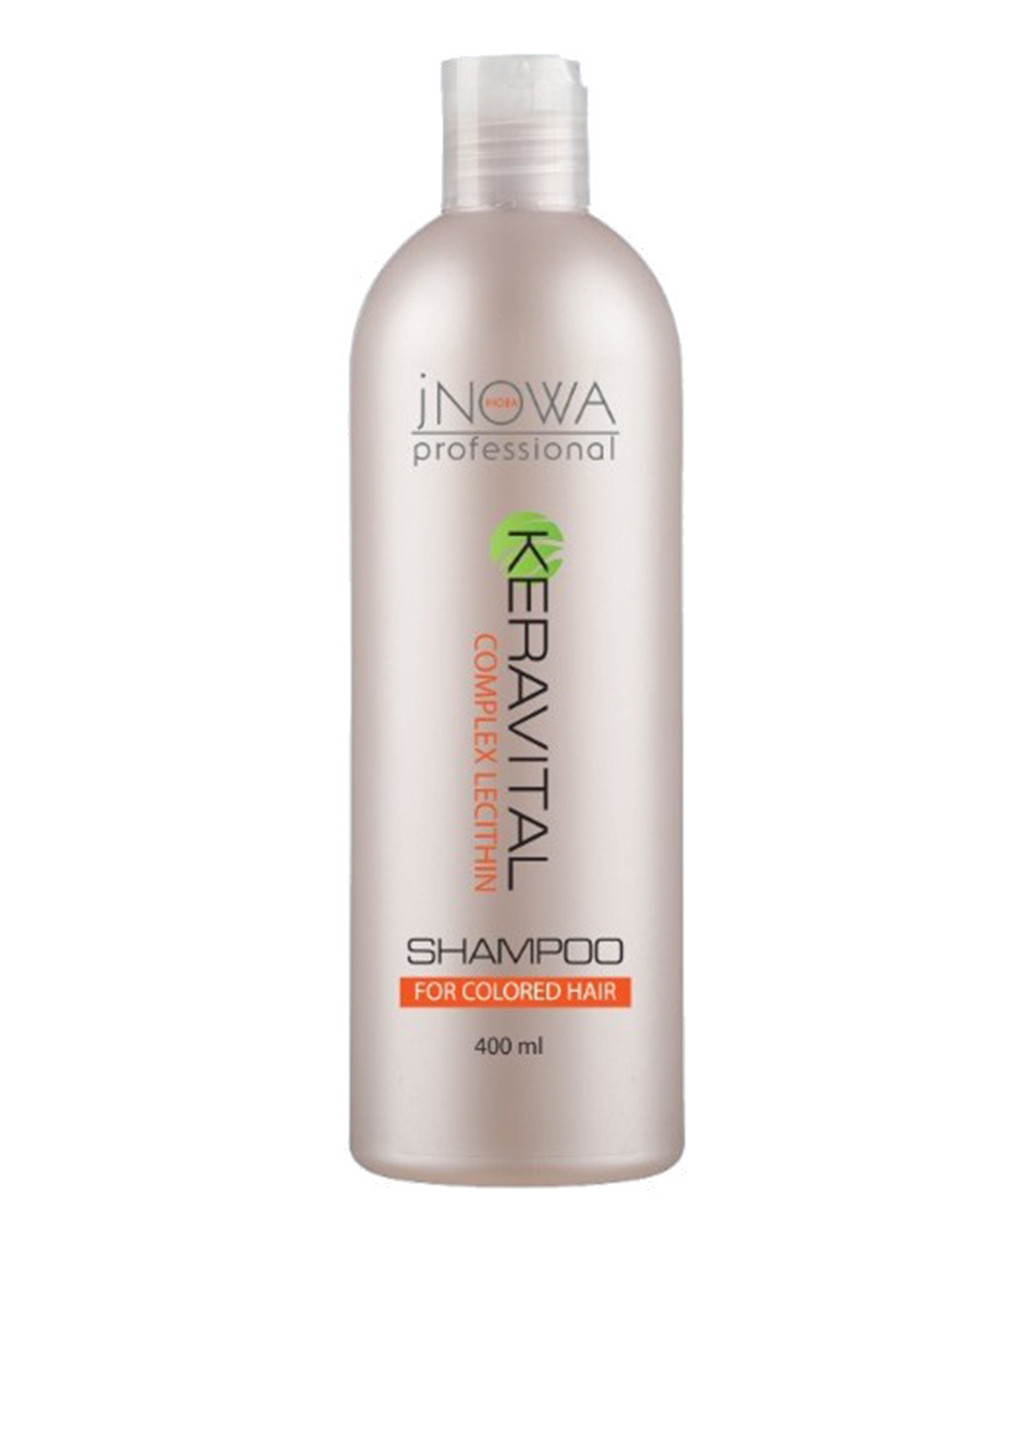 Шампунь для фарбованого волосся KeraVital Shampoo 400 мл jNOWA Professional (88092360)